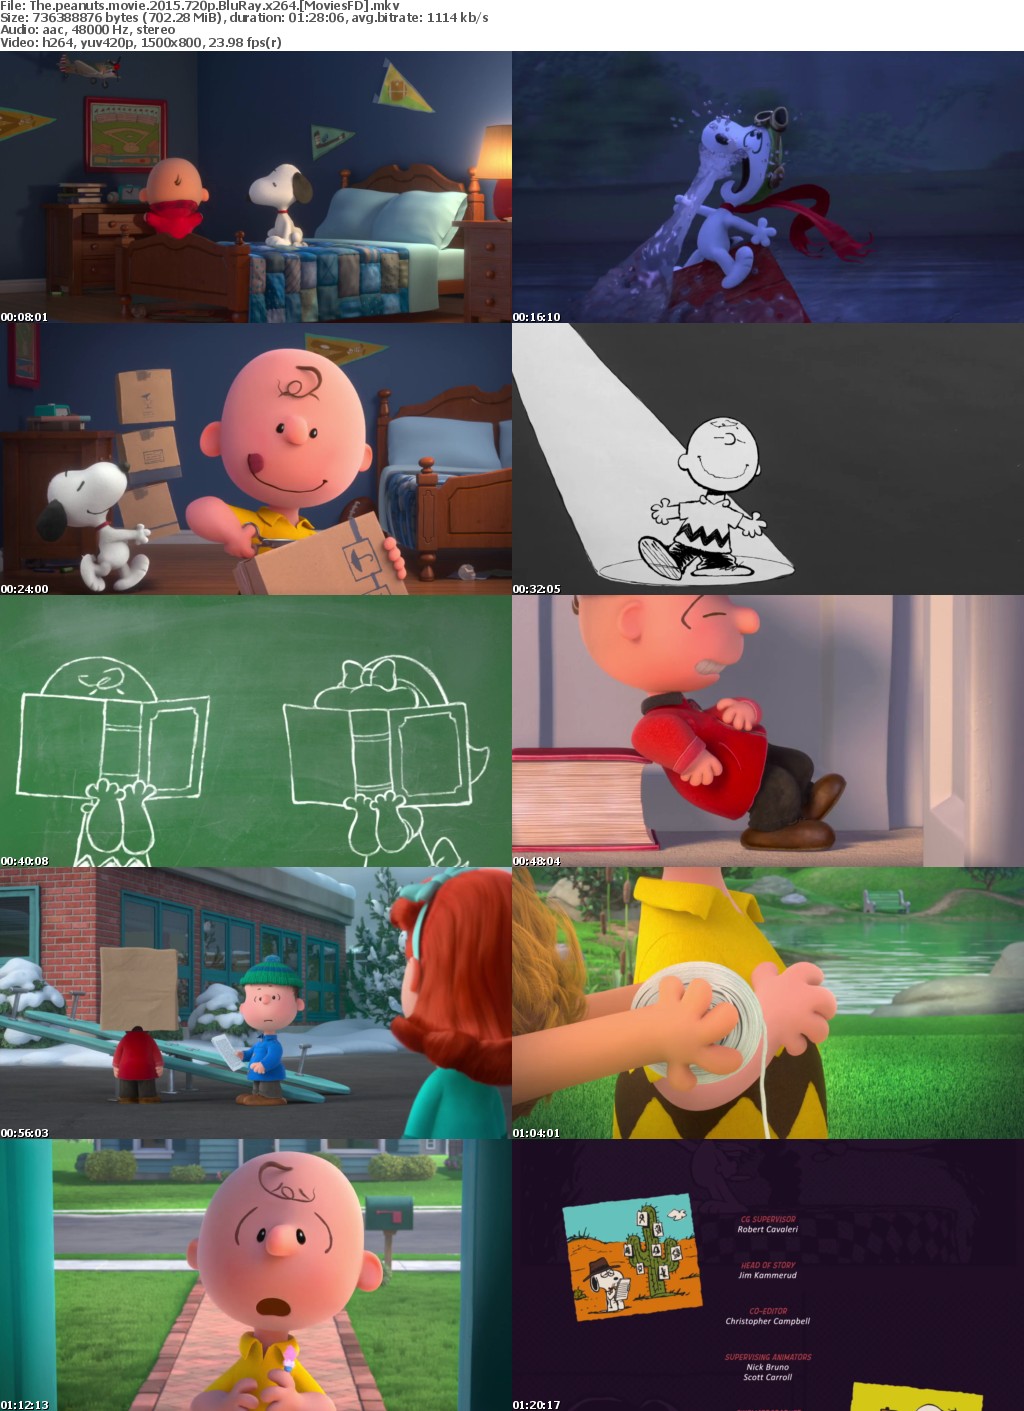 The Peanuts Movie (2015) 720p BluRay x264 - Moviesfd